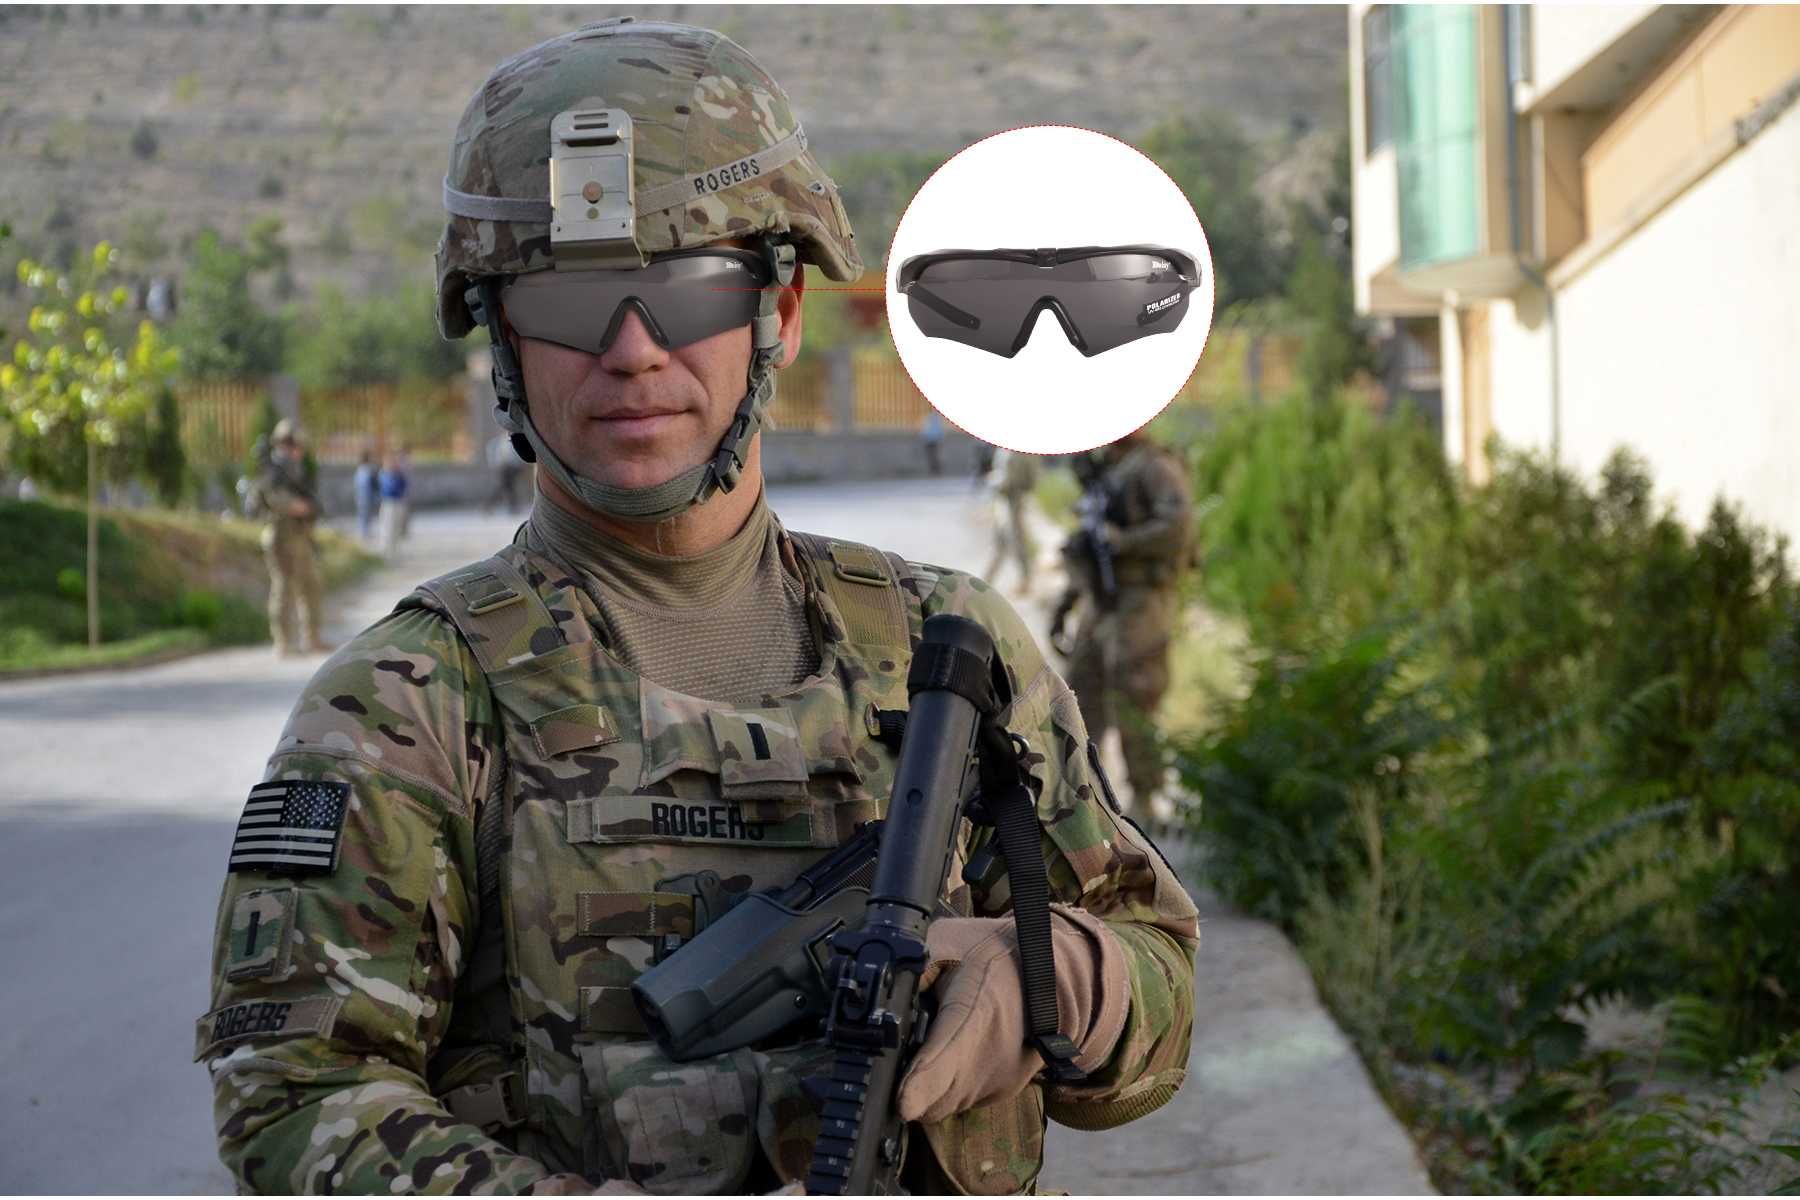 Тактические солнцезащитные очки Daisy X10 для военных с поляризацией